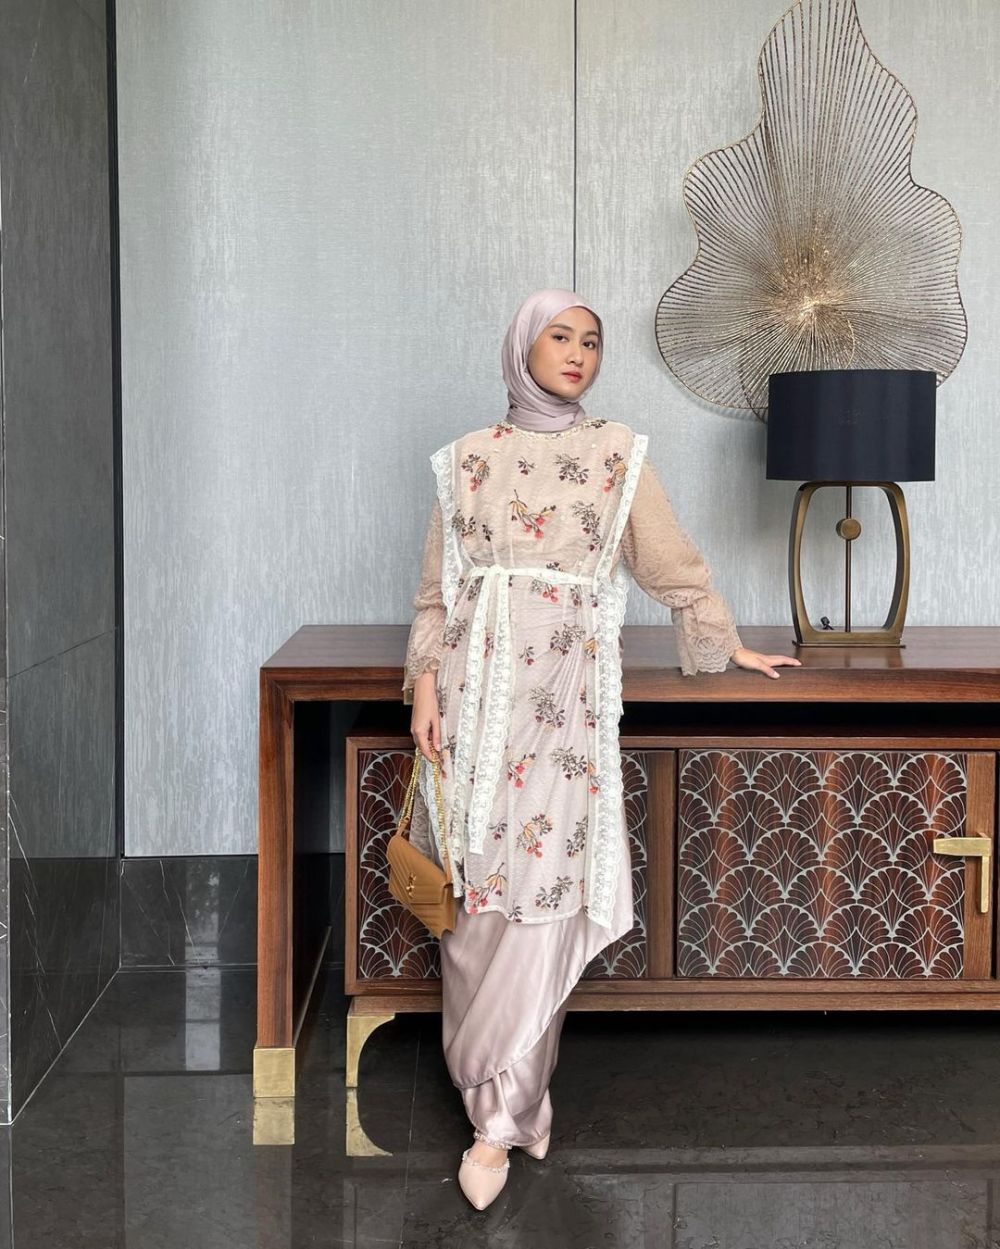 9 Ide Outfit Hijab Earth Tone untuk Lebaran, Cetar Abis!